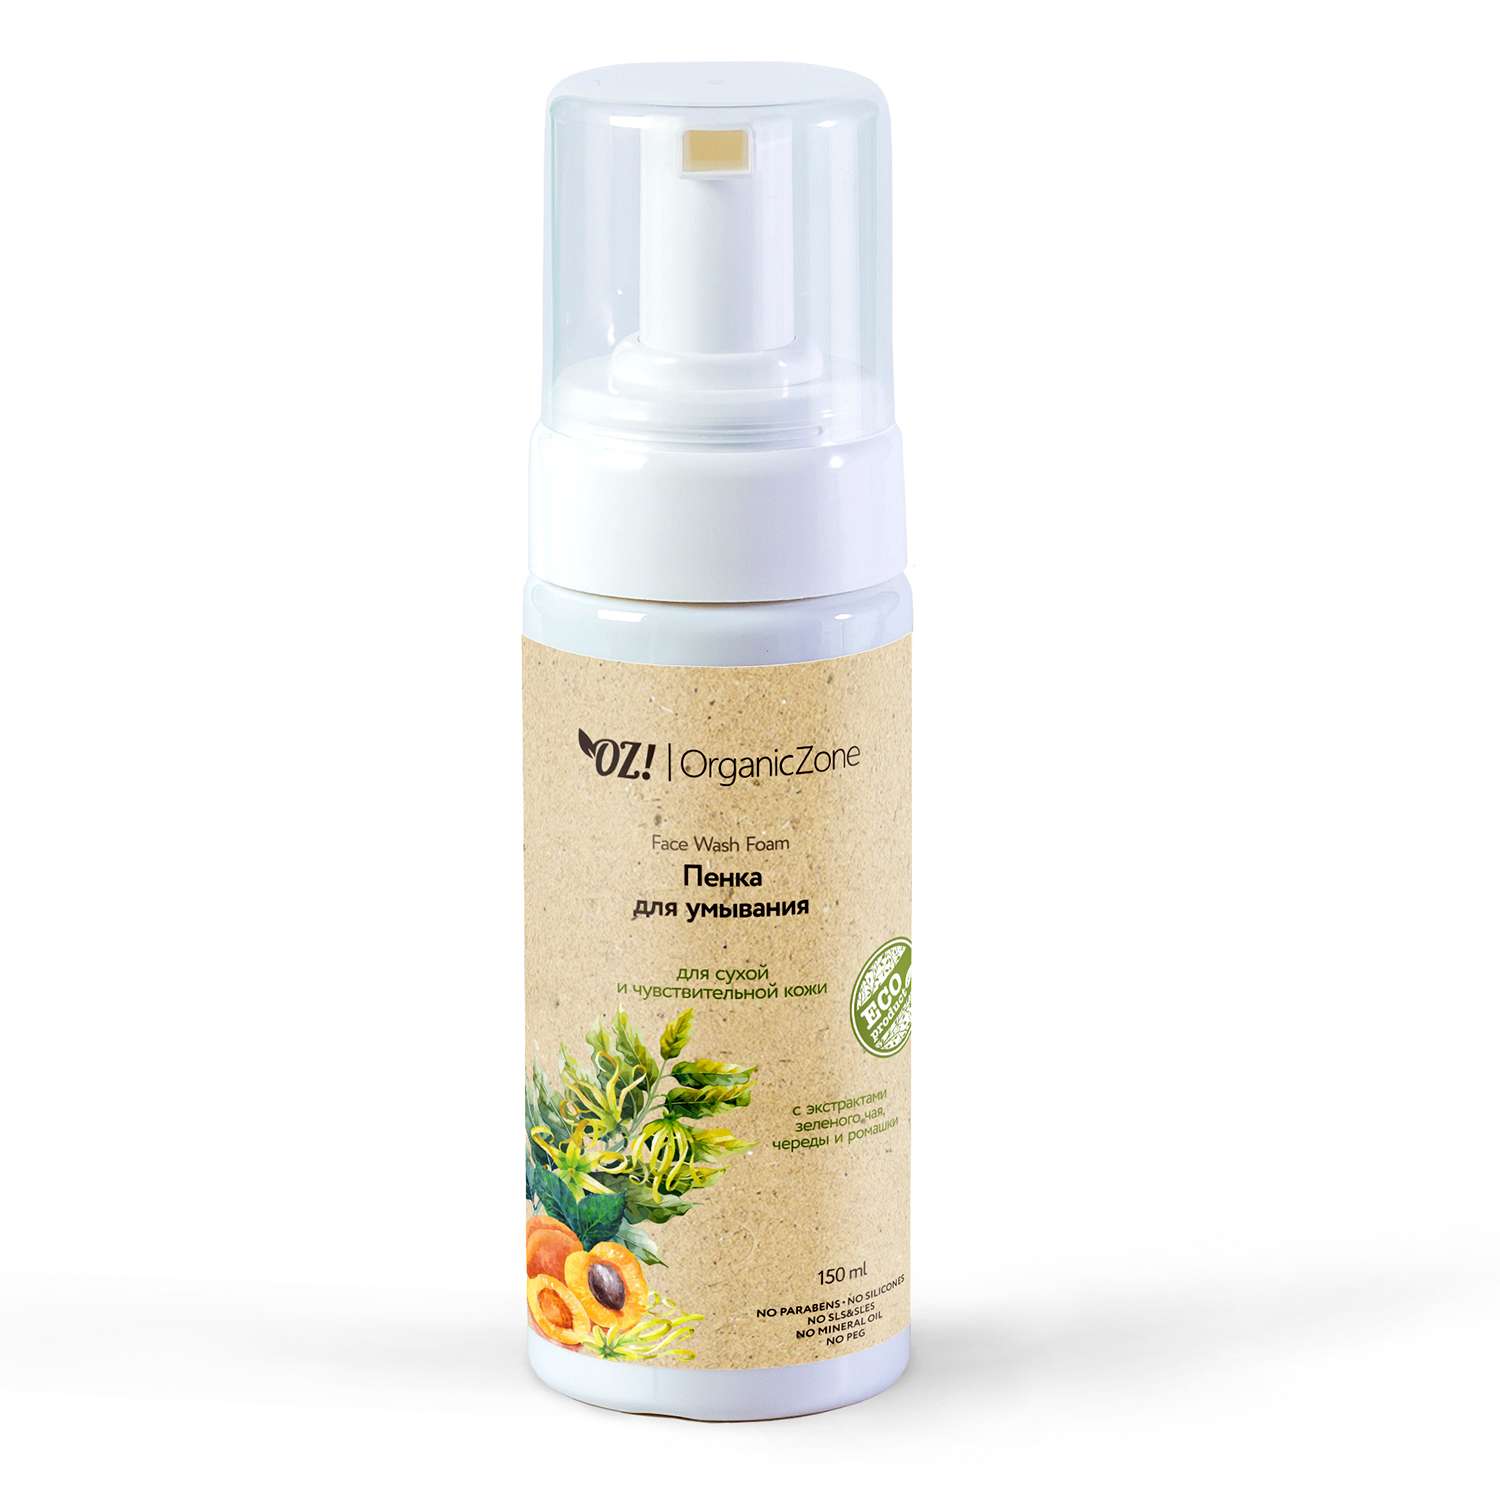 Пенка OrganicZone для умывания для сухой и чувствительной кожи 150мл - фото 1